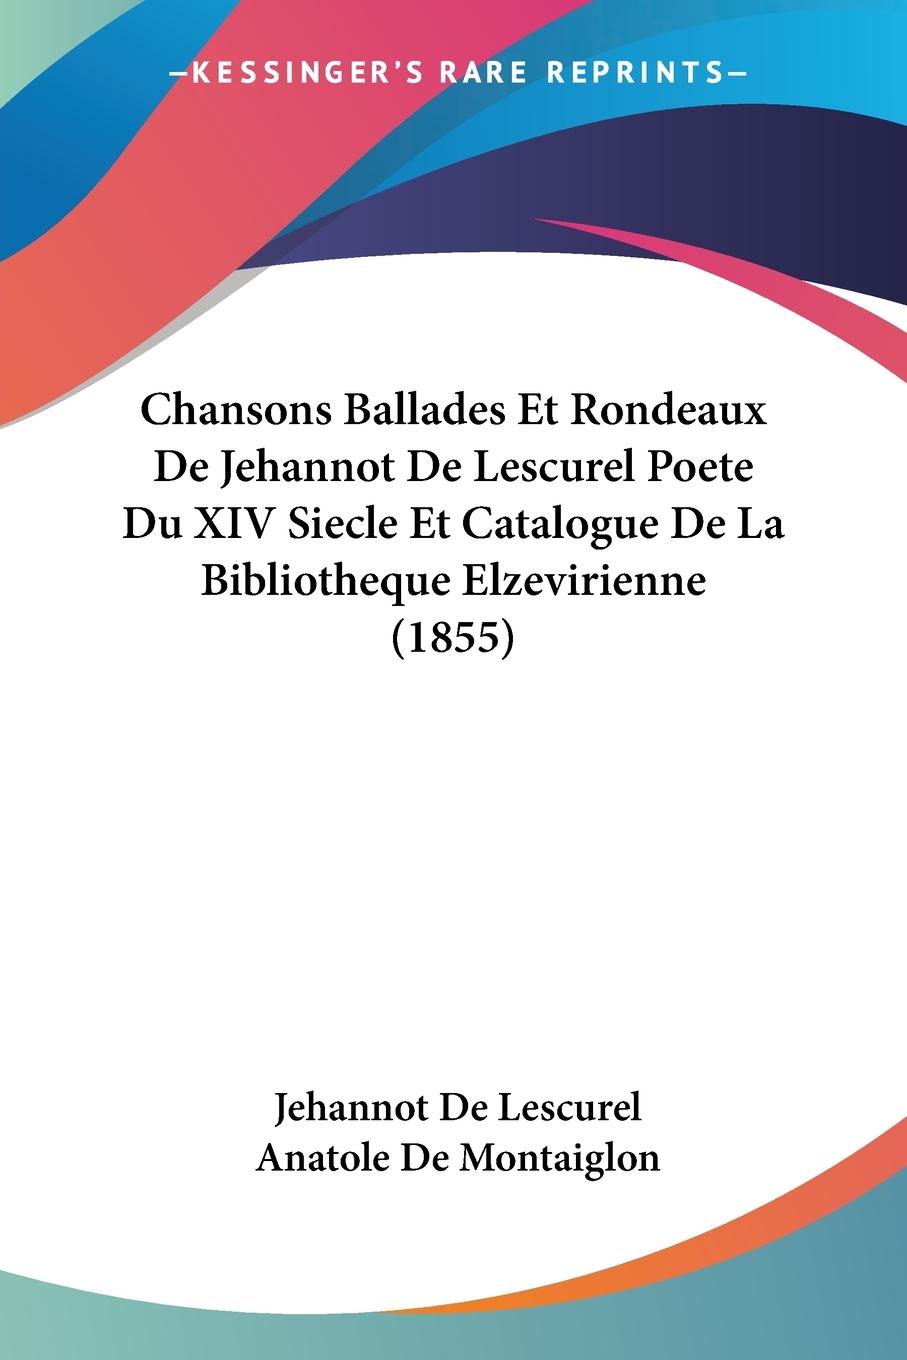 Chansons Ballades Et Rondeaux De Jehannot De Lescurel Poete Du XIV Siecle Et Catalogue De La Bibliotheque Elzevirienne (1855) - De Lescurel, Jehannot